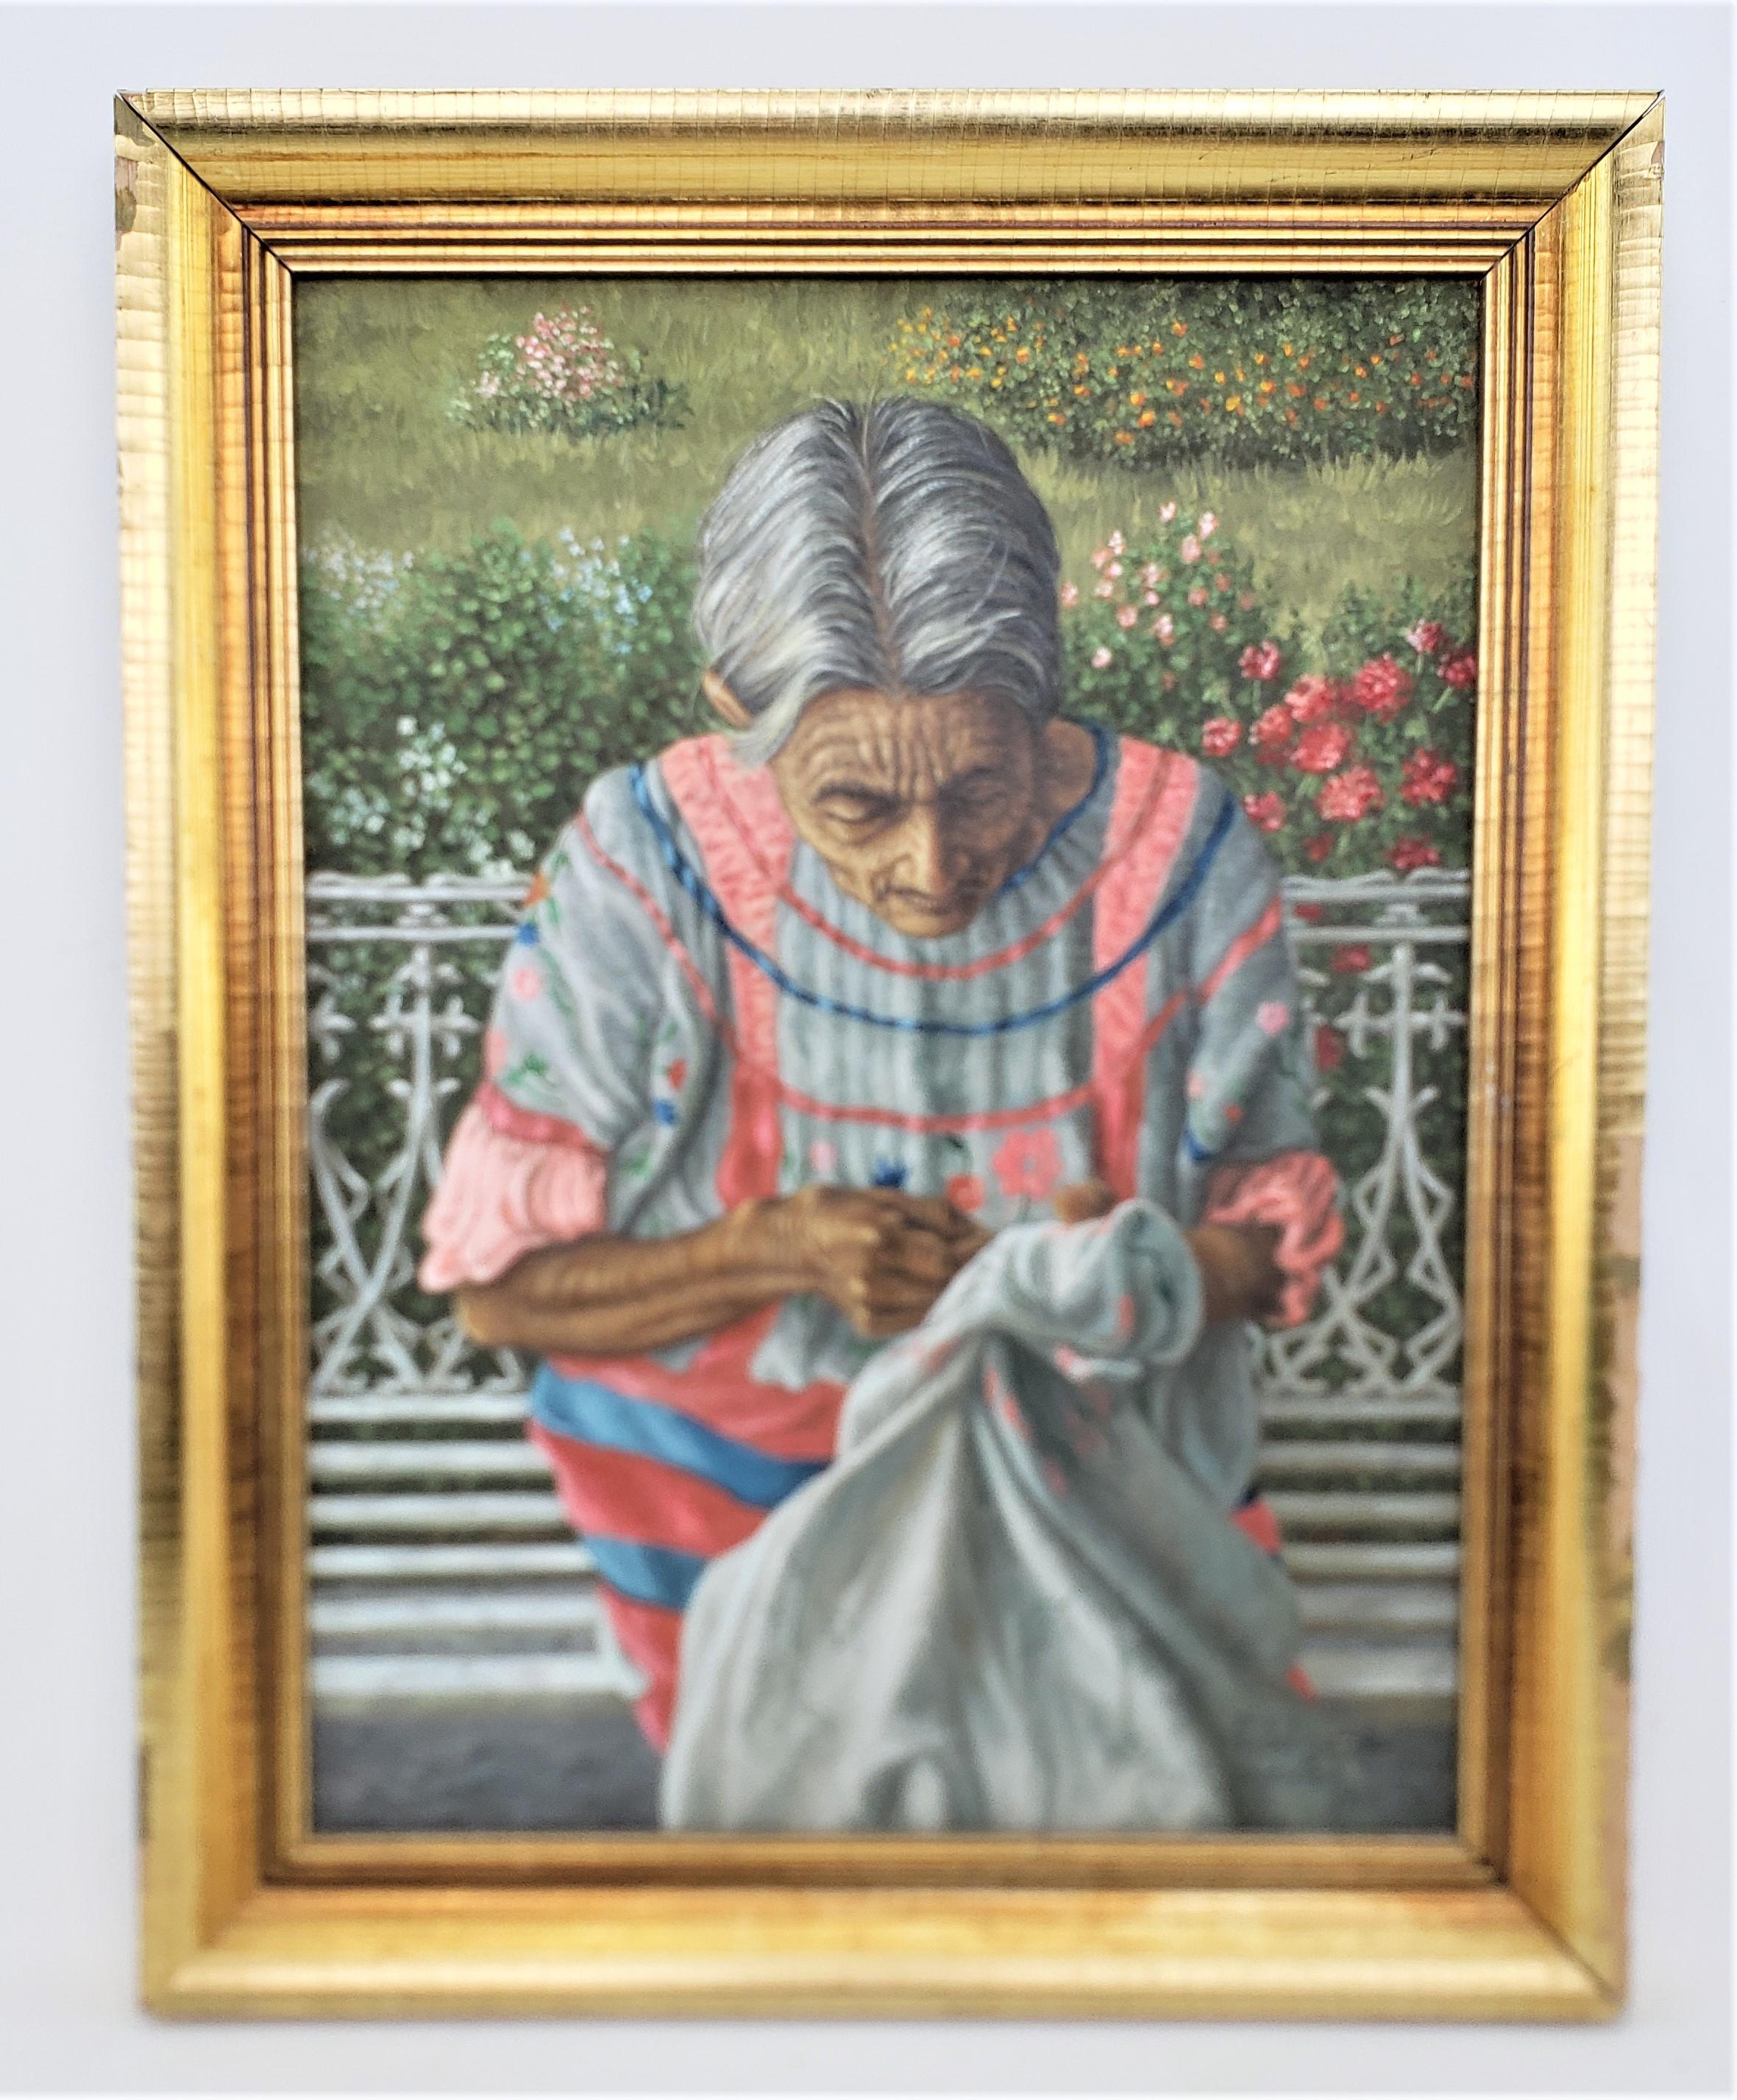 Cette peinture originale a été réalisée par Fidel Garcia M&M du Mexique en 1988 dans un style réaliste. La peinture est réalisée sur toile et représente une femme indigène mexicaine âgée cousant en plein air par une journée ensoleillée, assise sur